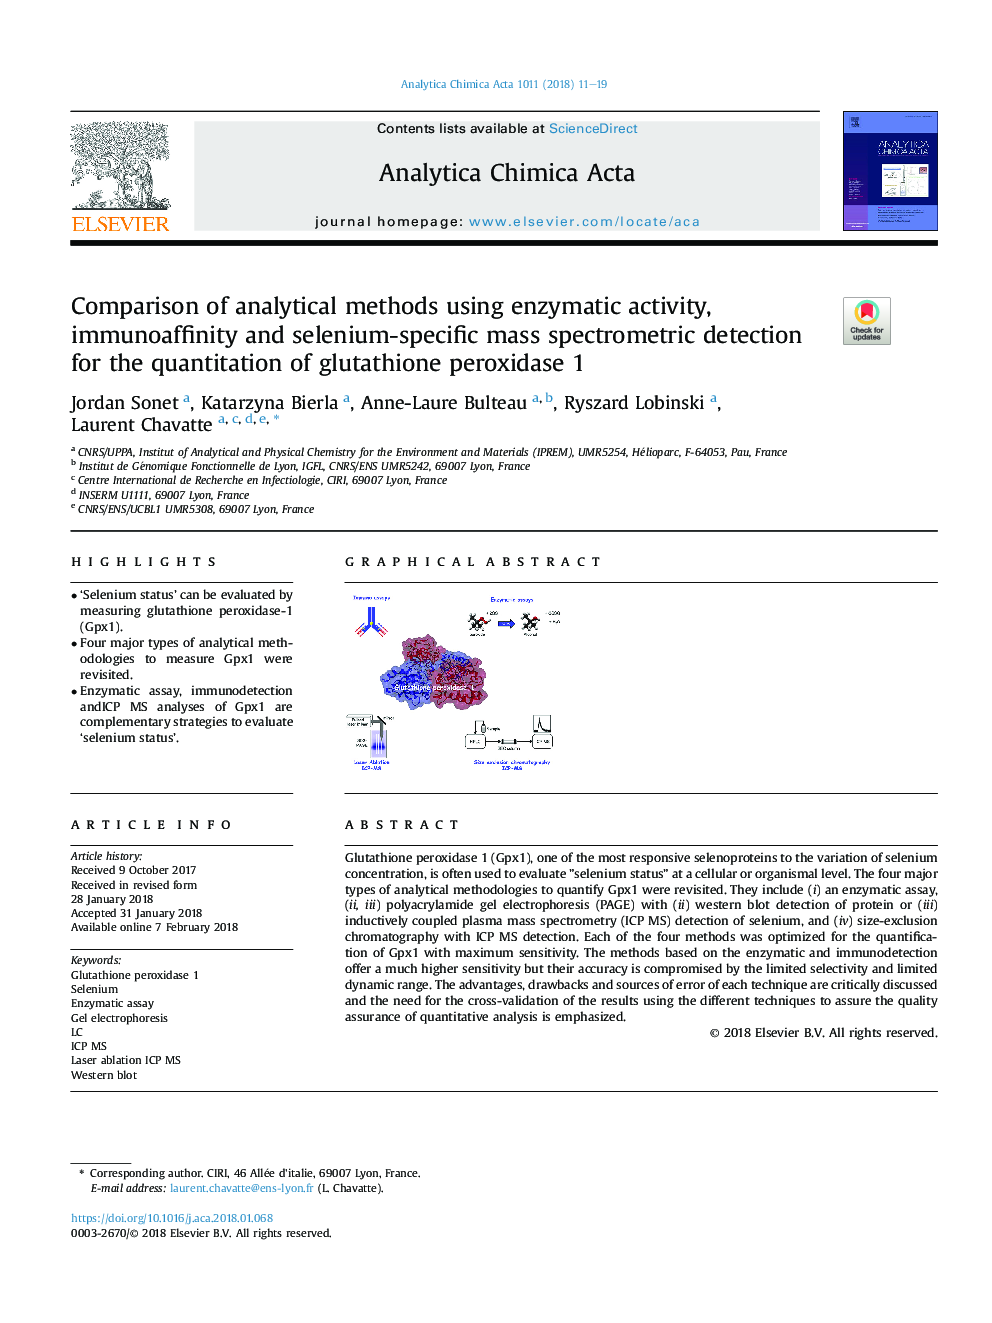 مقایسه روشهای تحلیلی با استفاده از فعالیت آنزیمی، تشخیص ایمونوفیلی و تشخیص طیف سنج جرمی سلنیوم برای کاهش گلوتاتیون پراکسیداز 1 